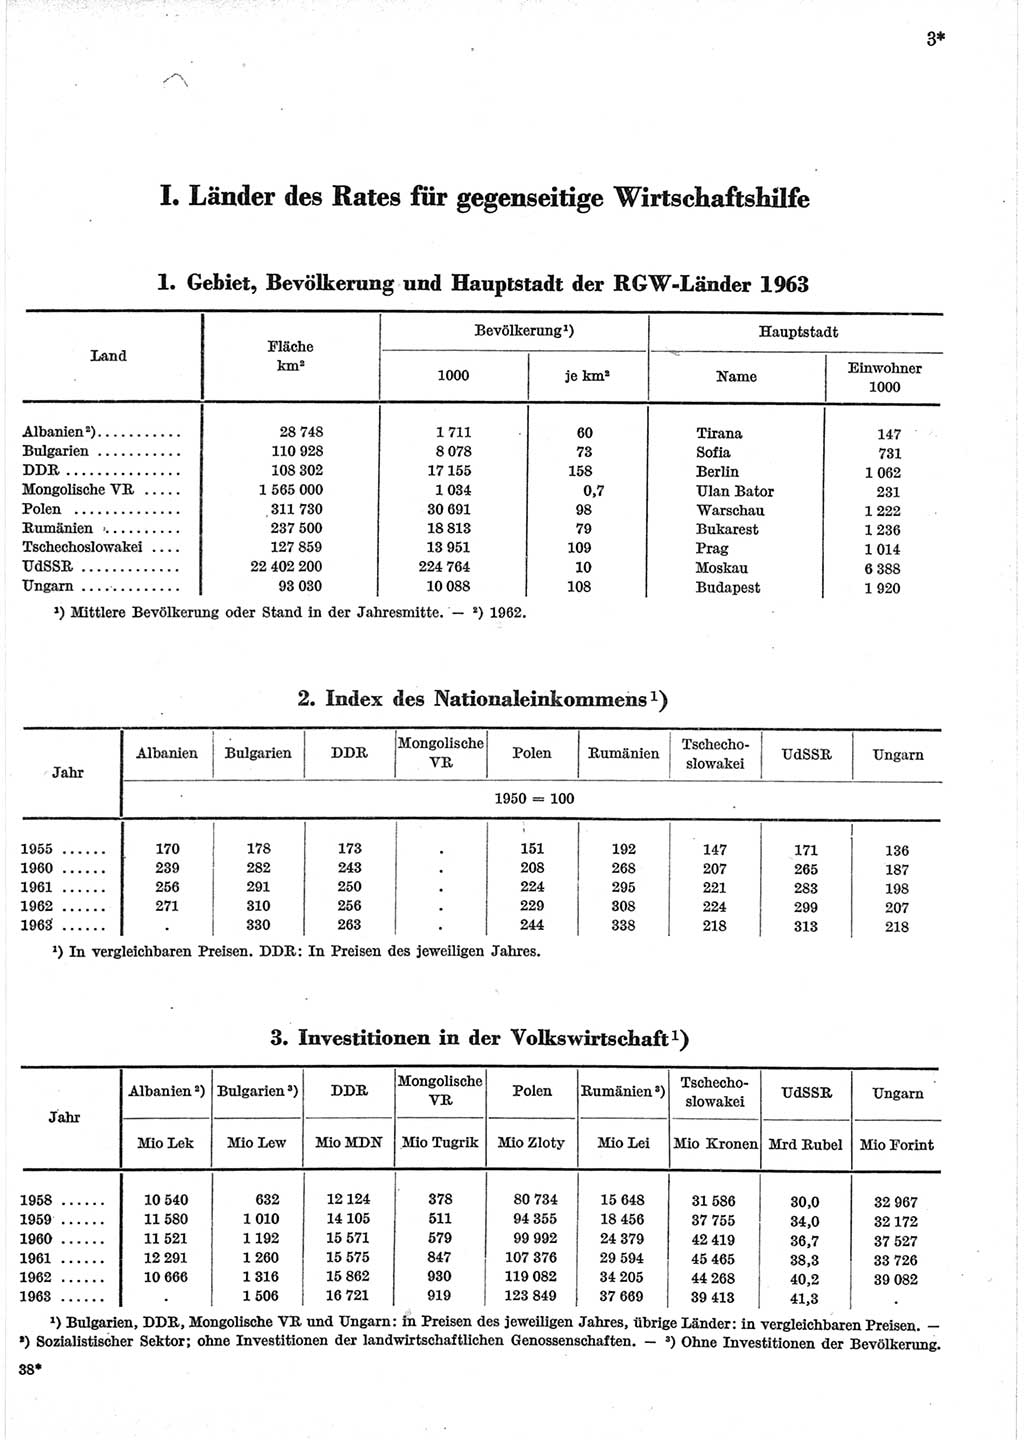 Statistisches Jahrbuch der Deutschen Demokratischen Republik (DDR) 1965, Seite 3 (Stat. Jb. DDR 1965, S. 3)